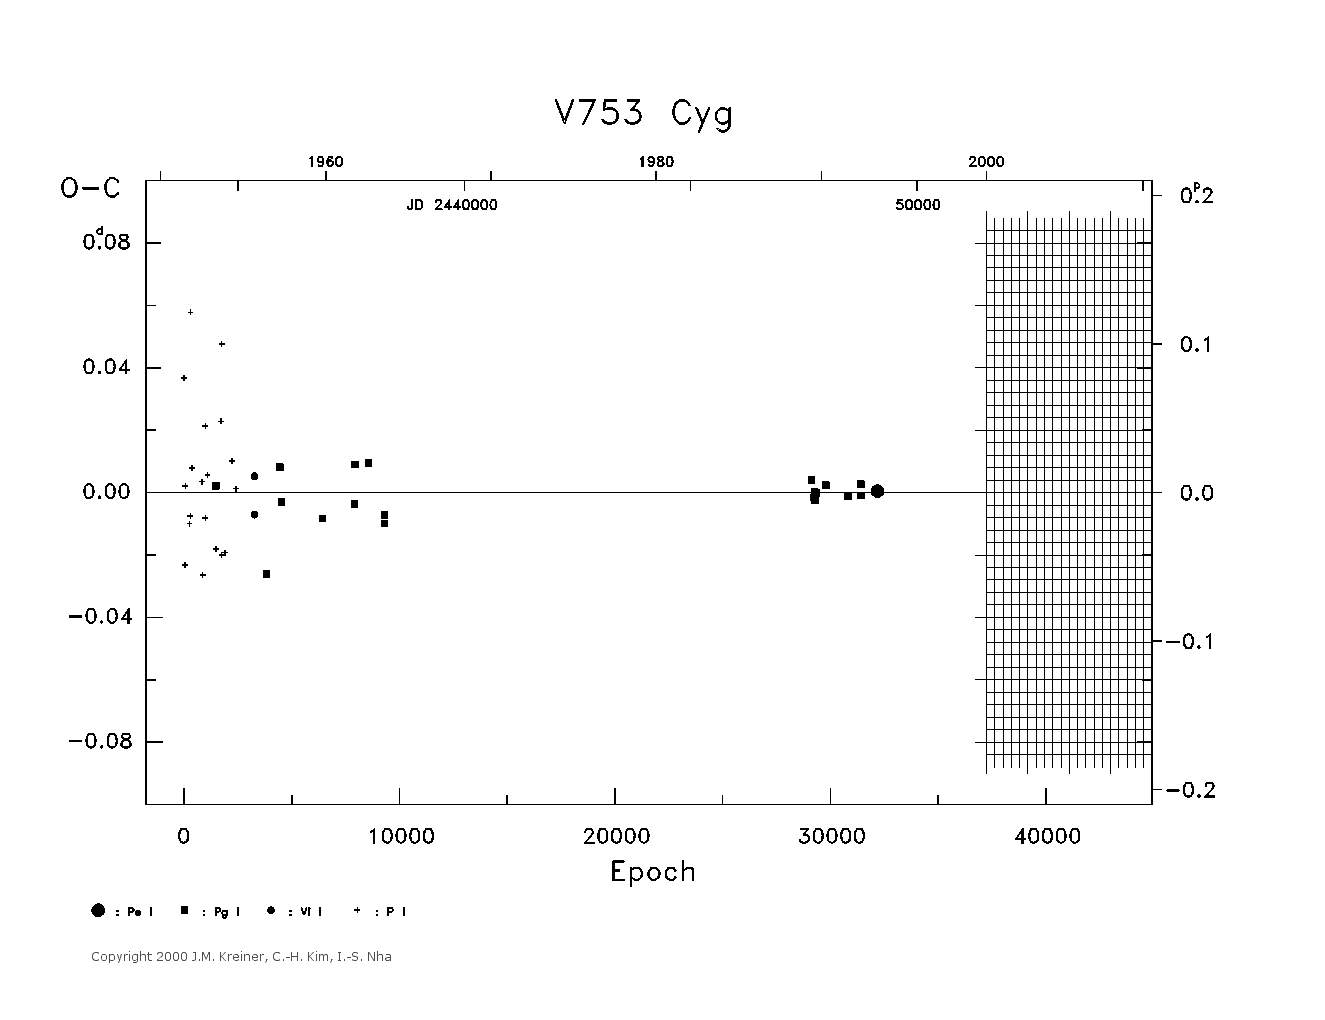 [IMAGE: large V753 CYG O-C diagram]